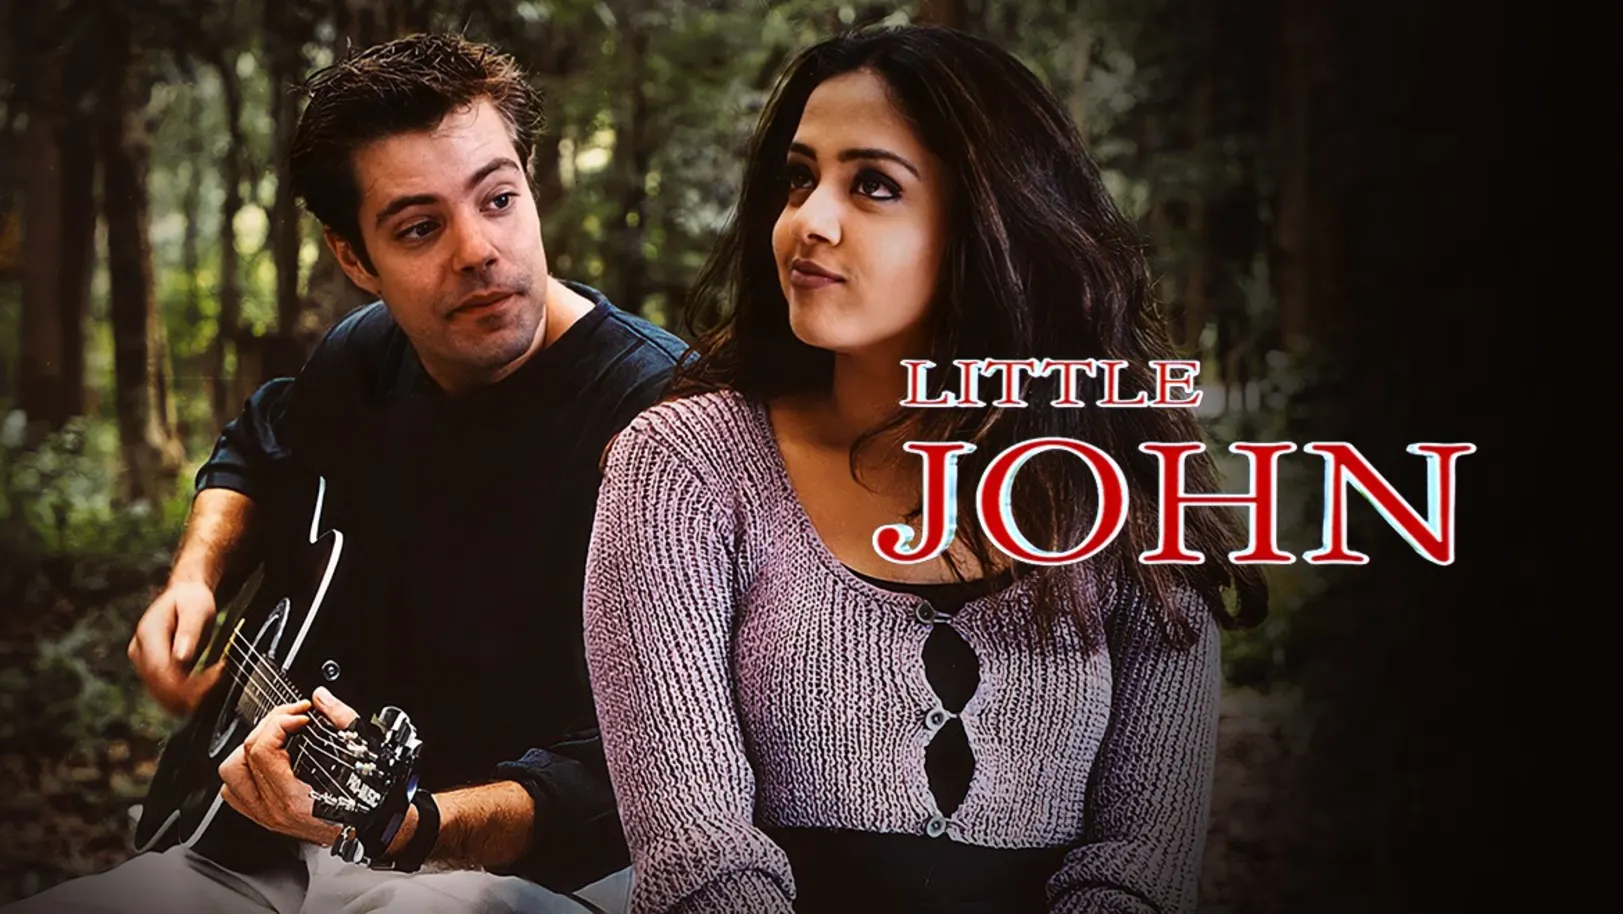 Little John Movie